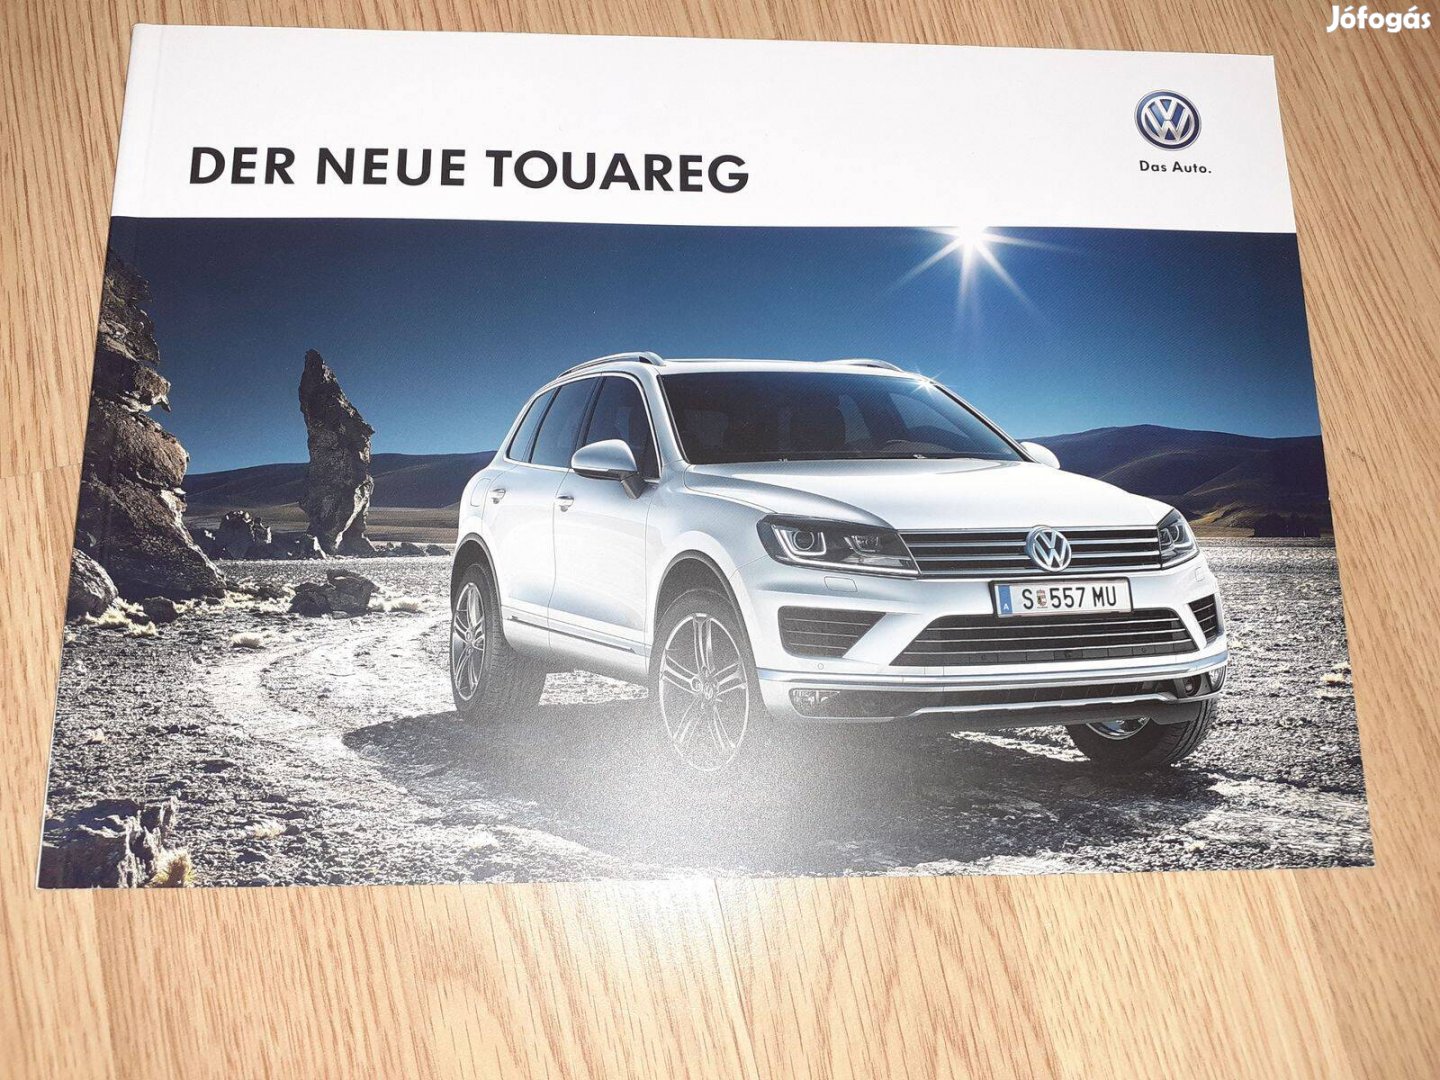 Volkswagen Touareg prospektus - 2014, német nyelvű